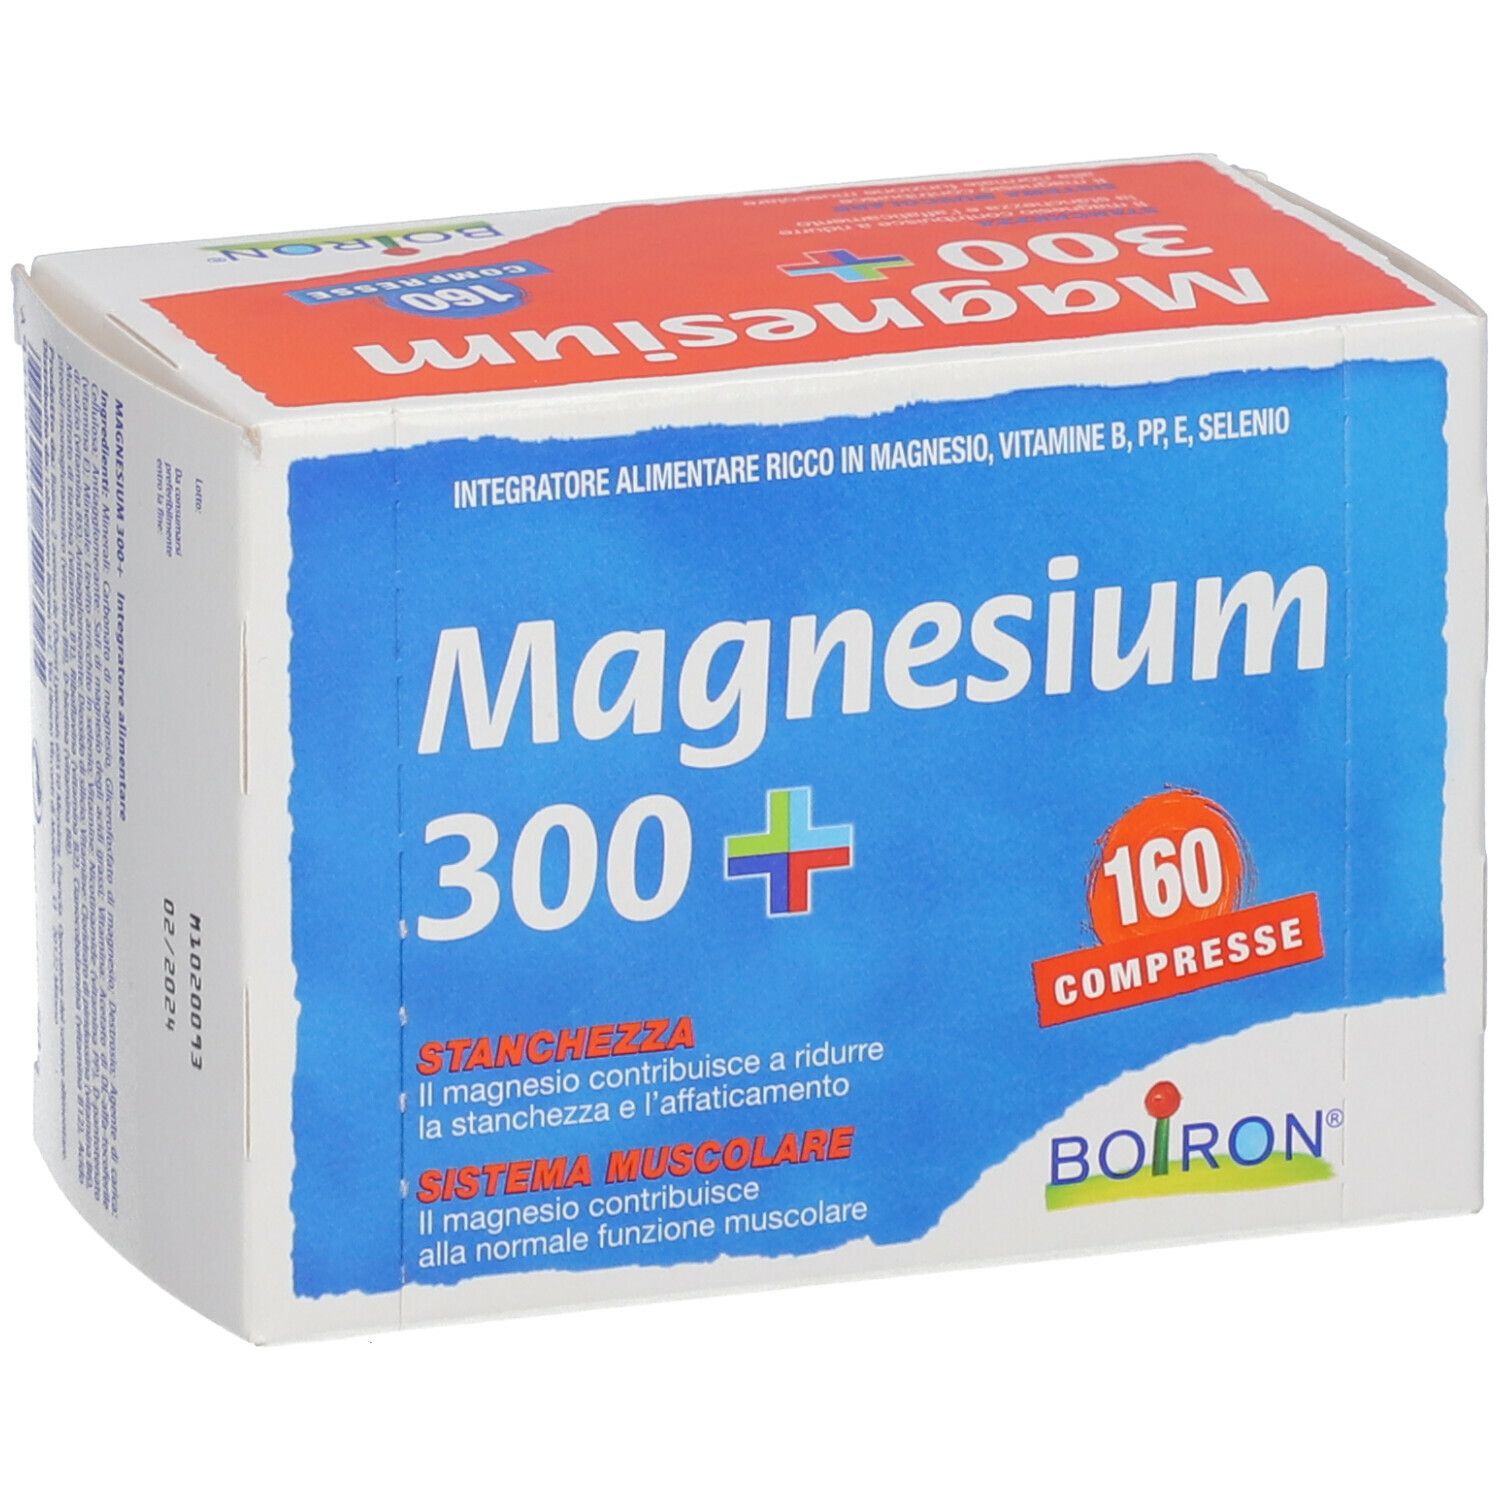 Magnesium 300 +